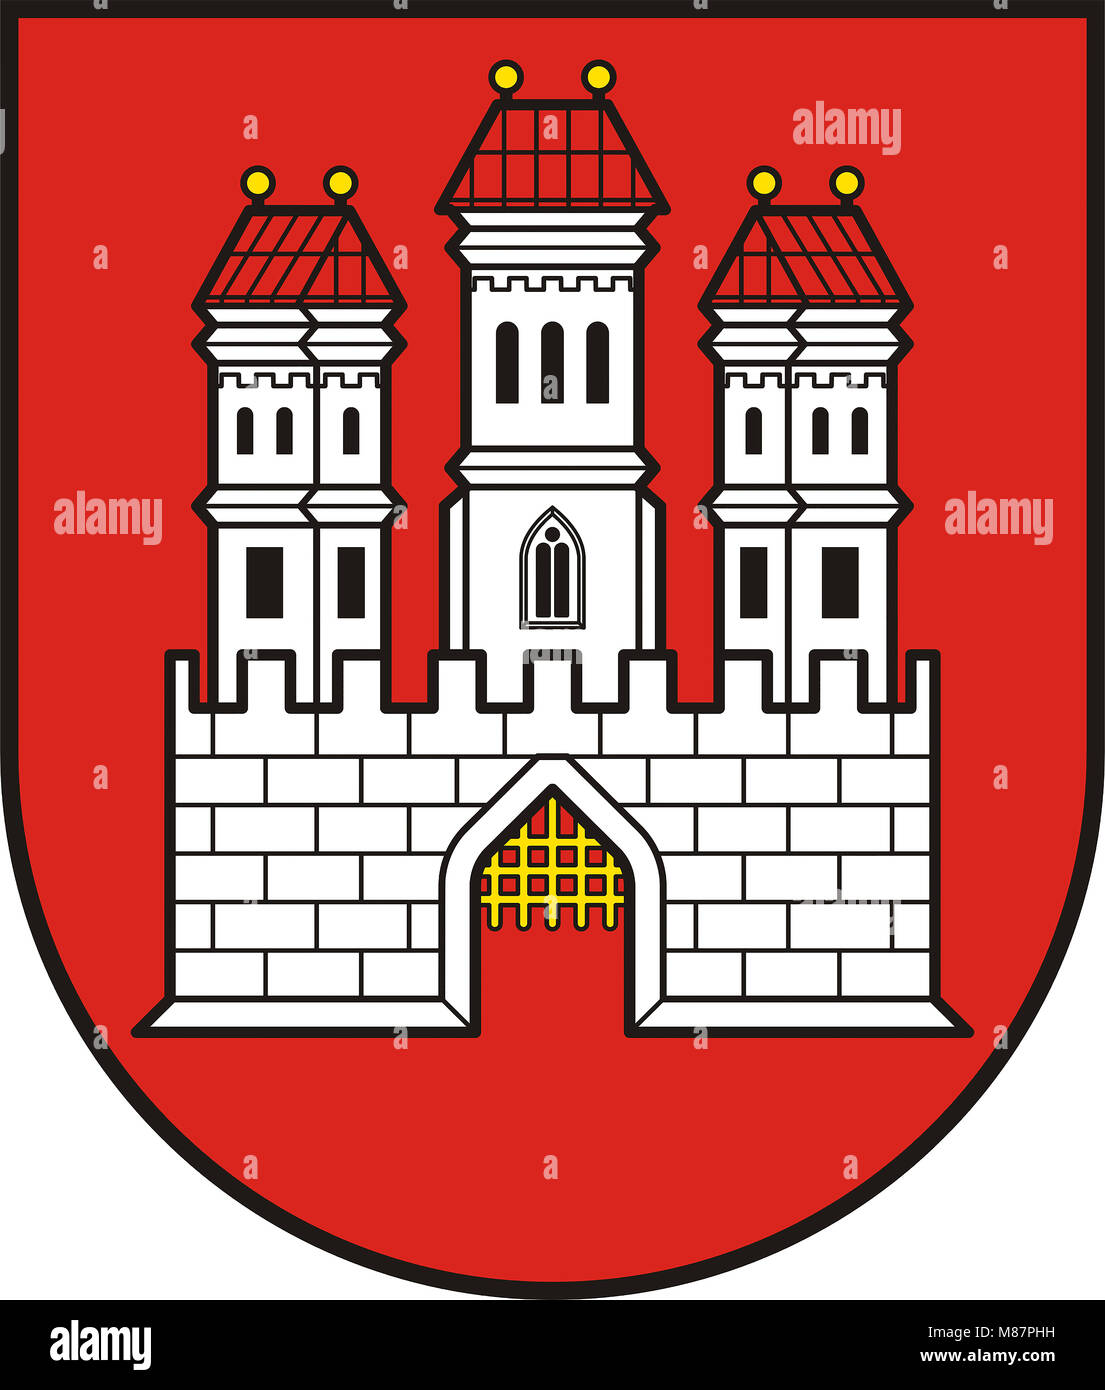 Wappen der slowakischen Hauptstadt Bratislava - Slowakei. Stockfoto